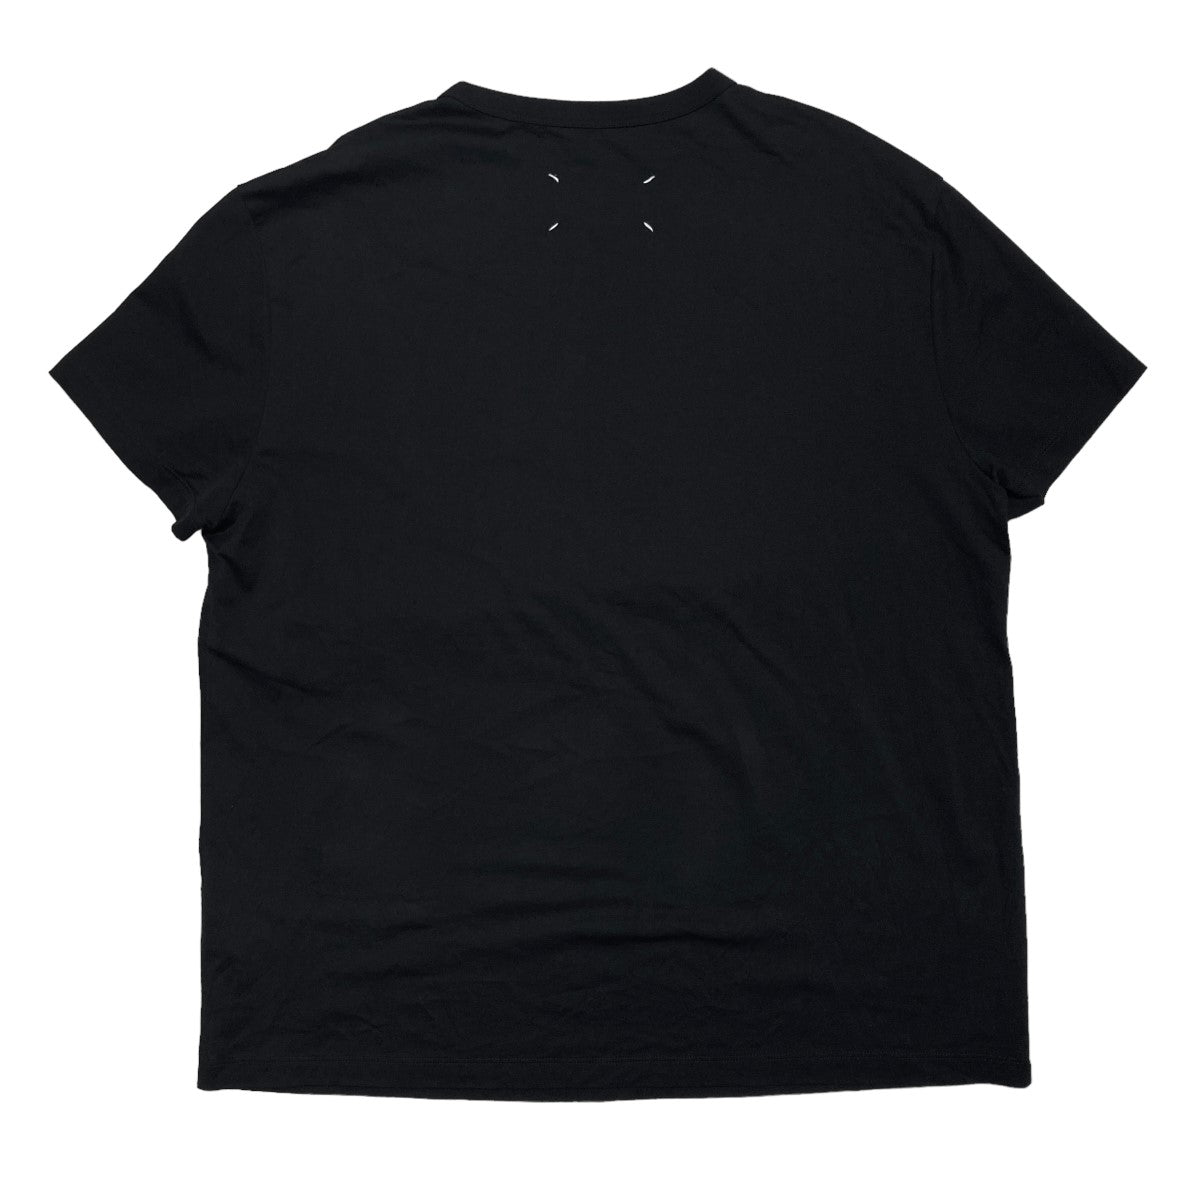 カレンダーグラフィック ロゴTシャツ 半袖Tシャツ S50GC0684